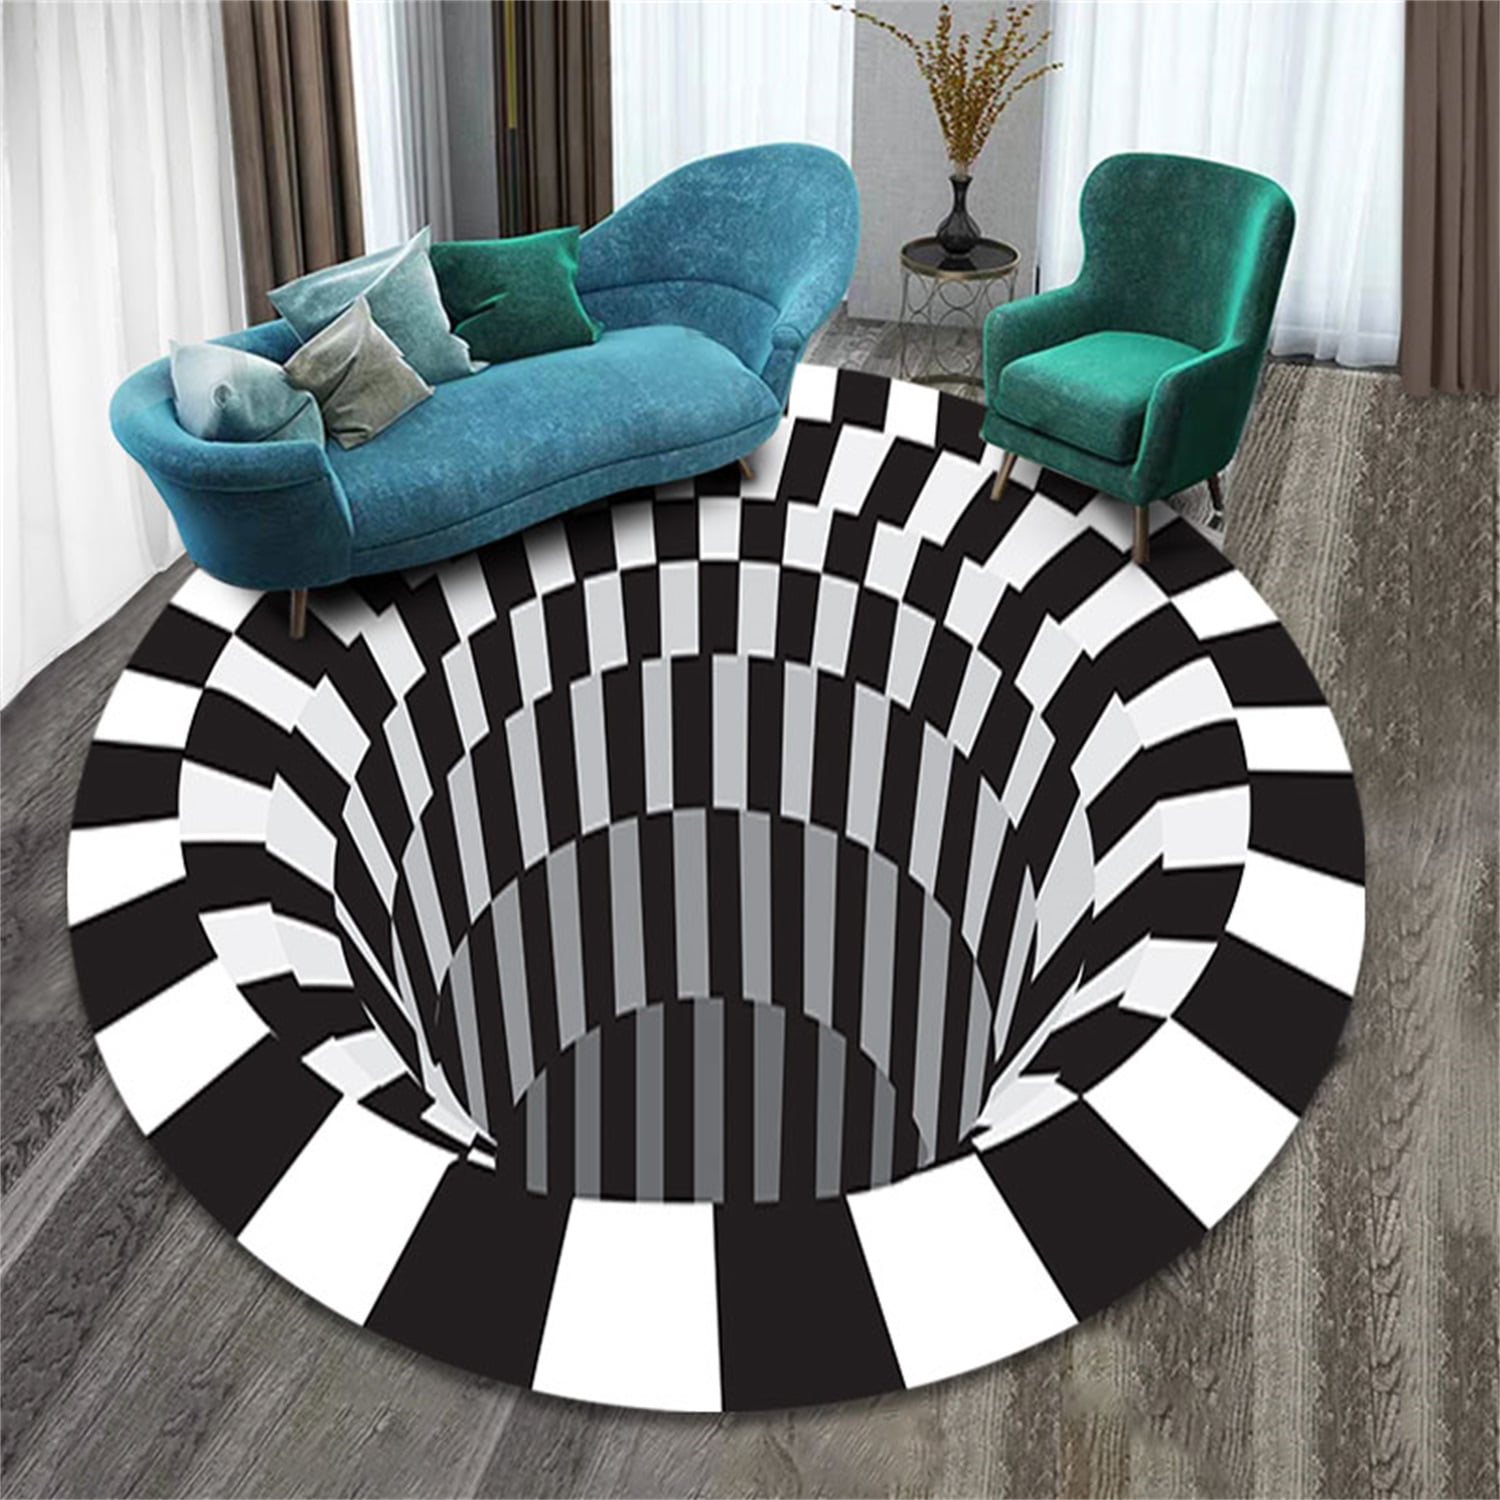 3D Swirl Print Optical Illusion Area Rug Carpet Floor Pad Non-slip Doormat Mats 